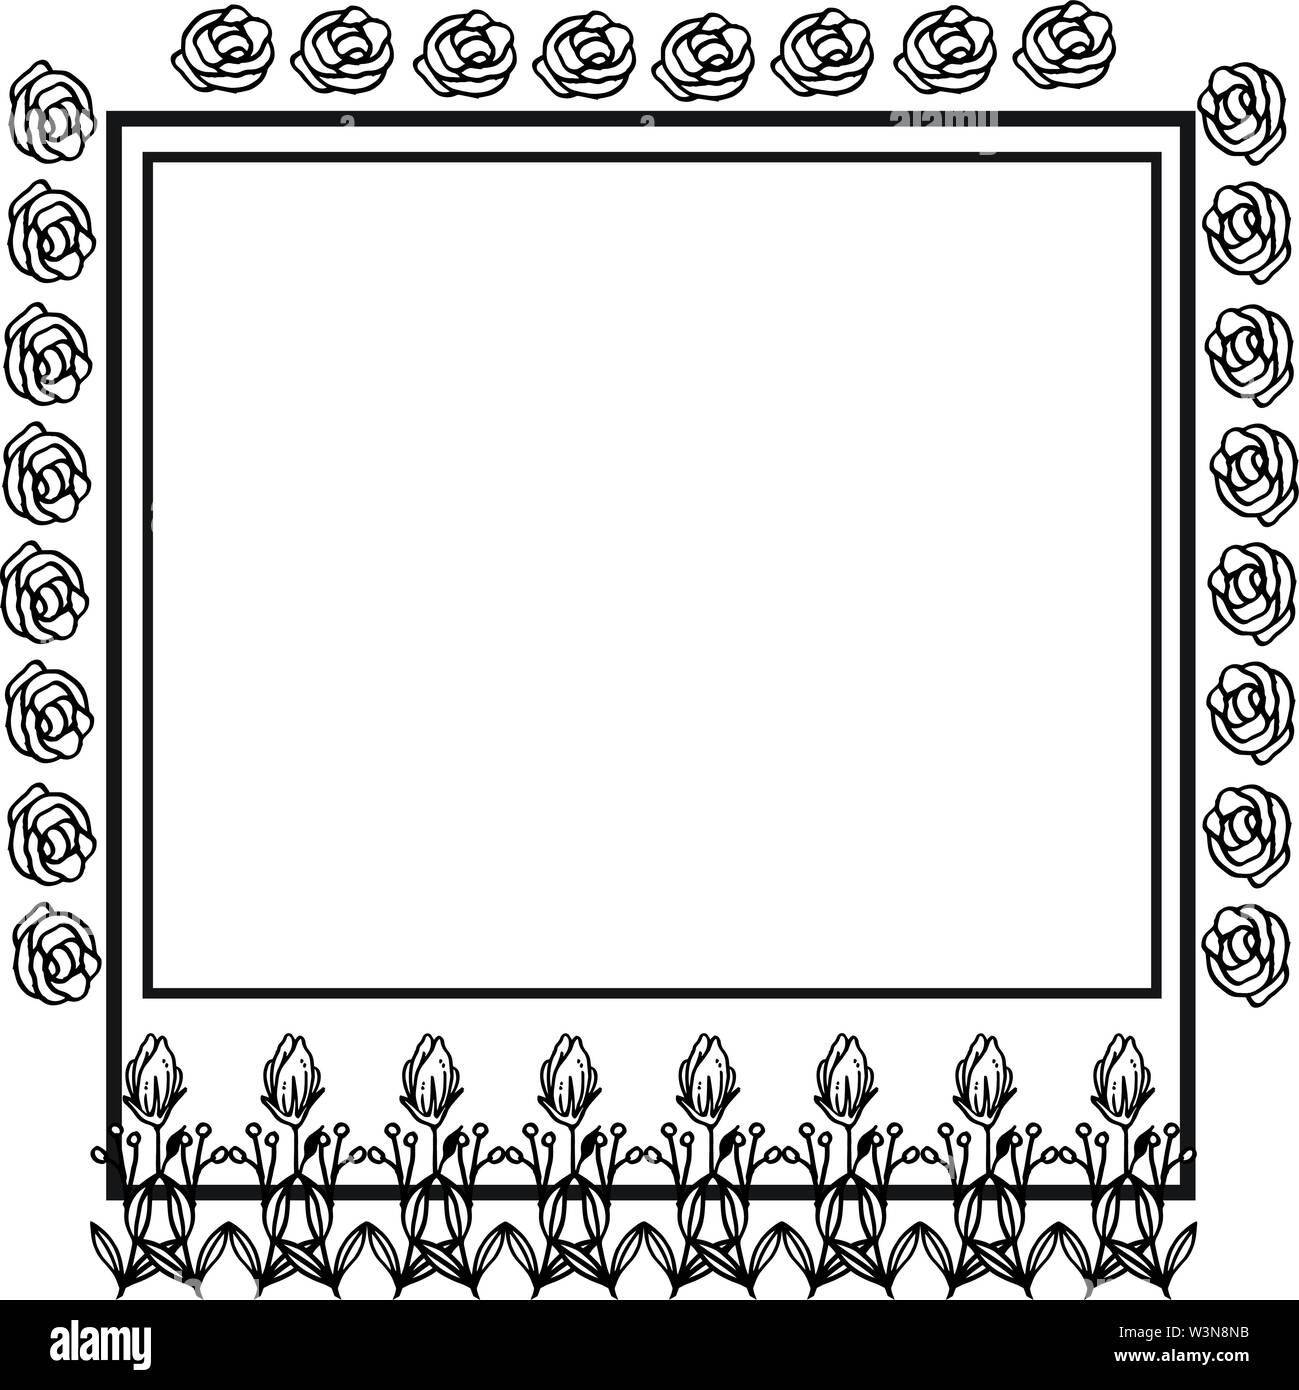 Black and white rose flower frame template. Vector illustration Stock ...